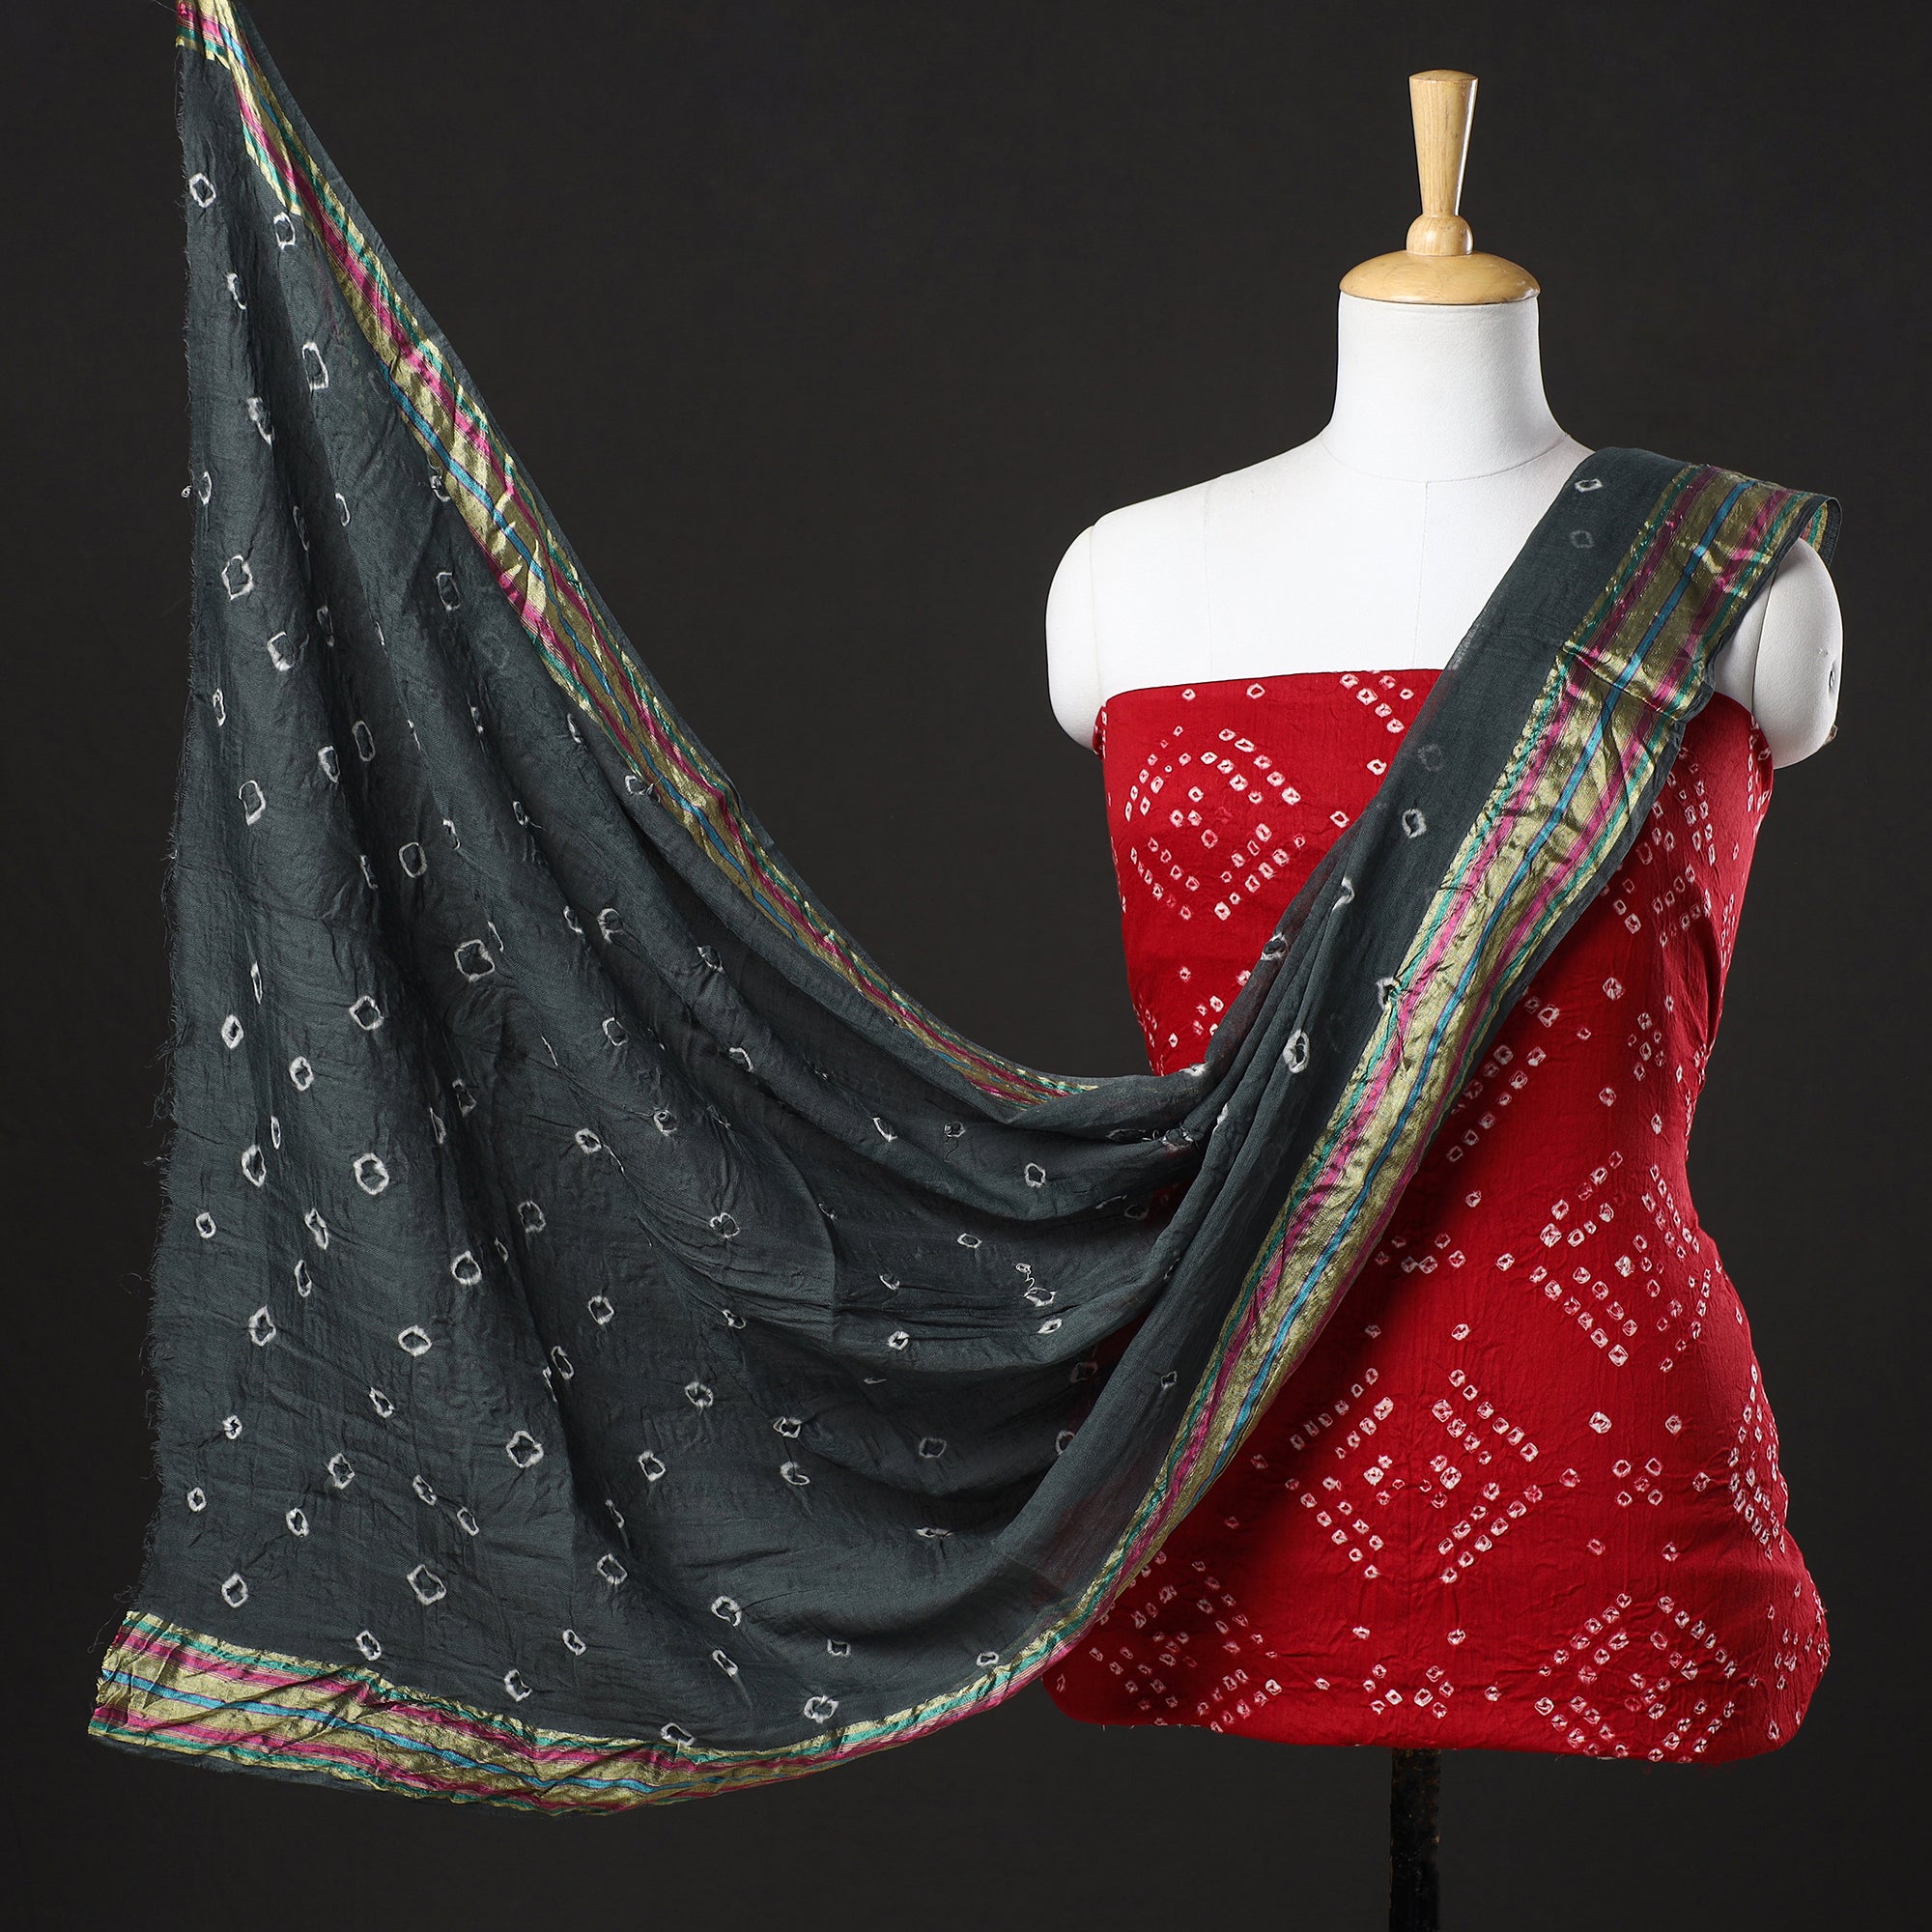 Pure Satin Self Dress Material at Best Price in Ahmedabad | Shri Ram Kishan  Textile